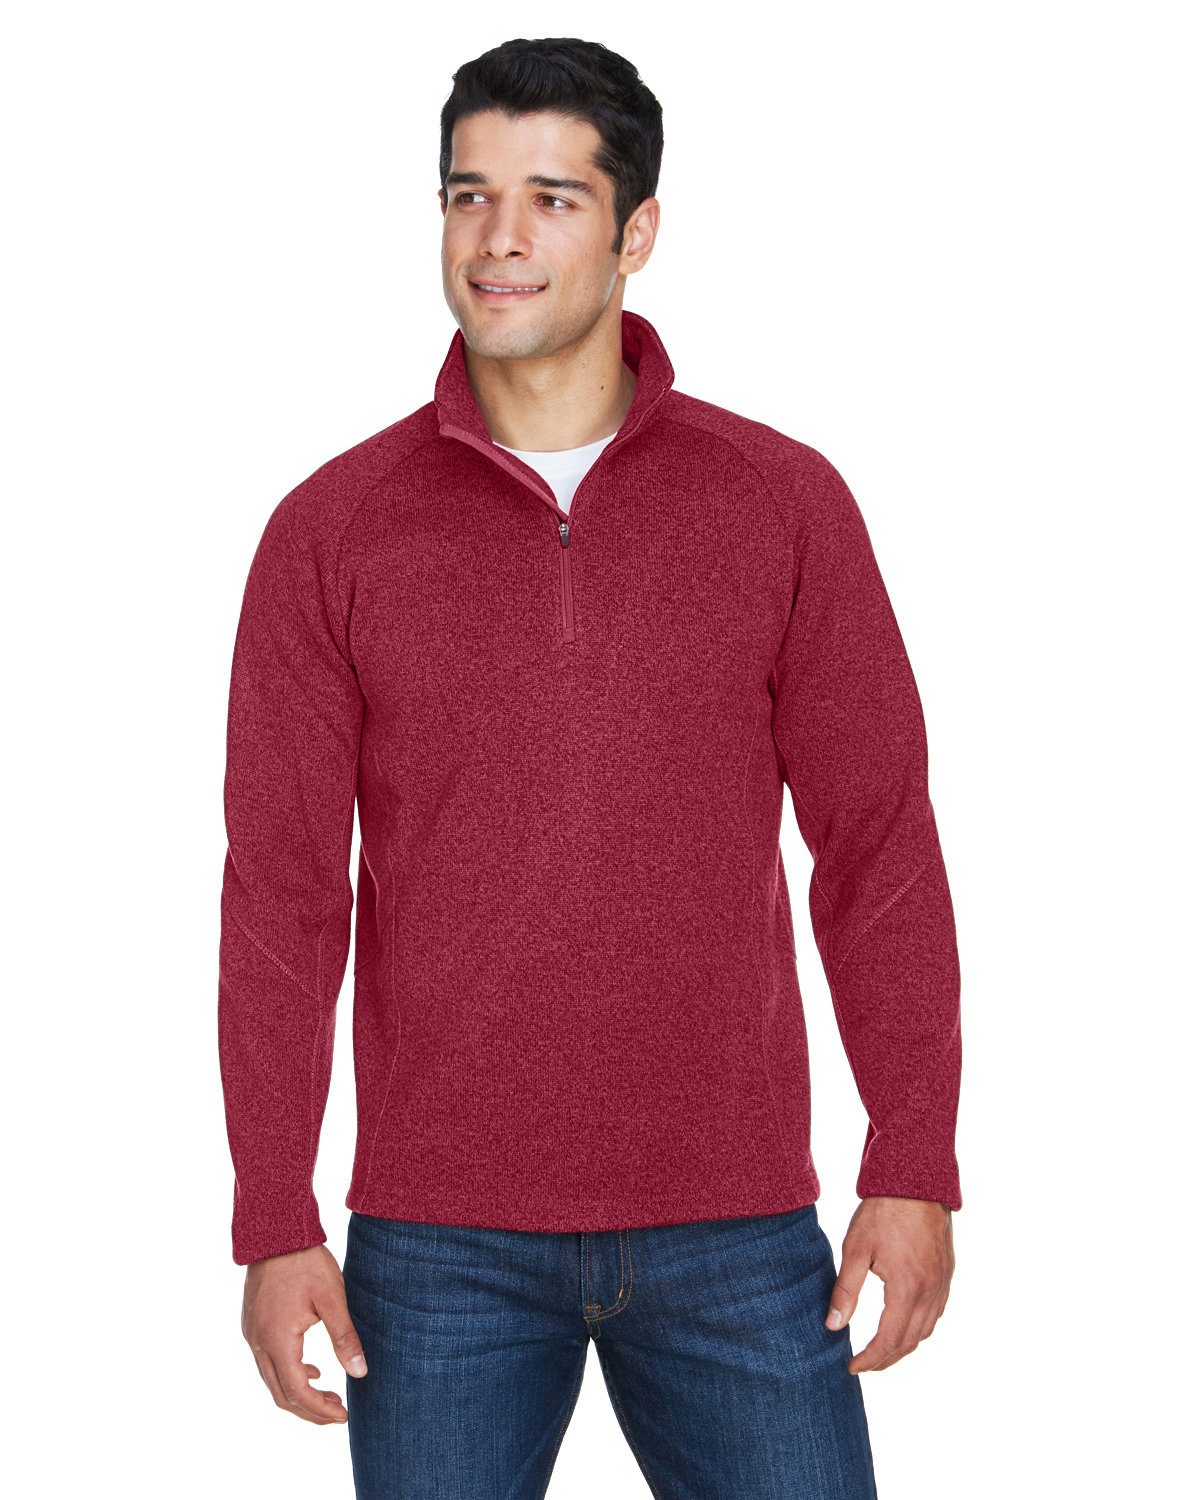 Devon & Jones Adult Bristol Sweater Fleece Quarter-Zip #DG792 Red Heather